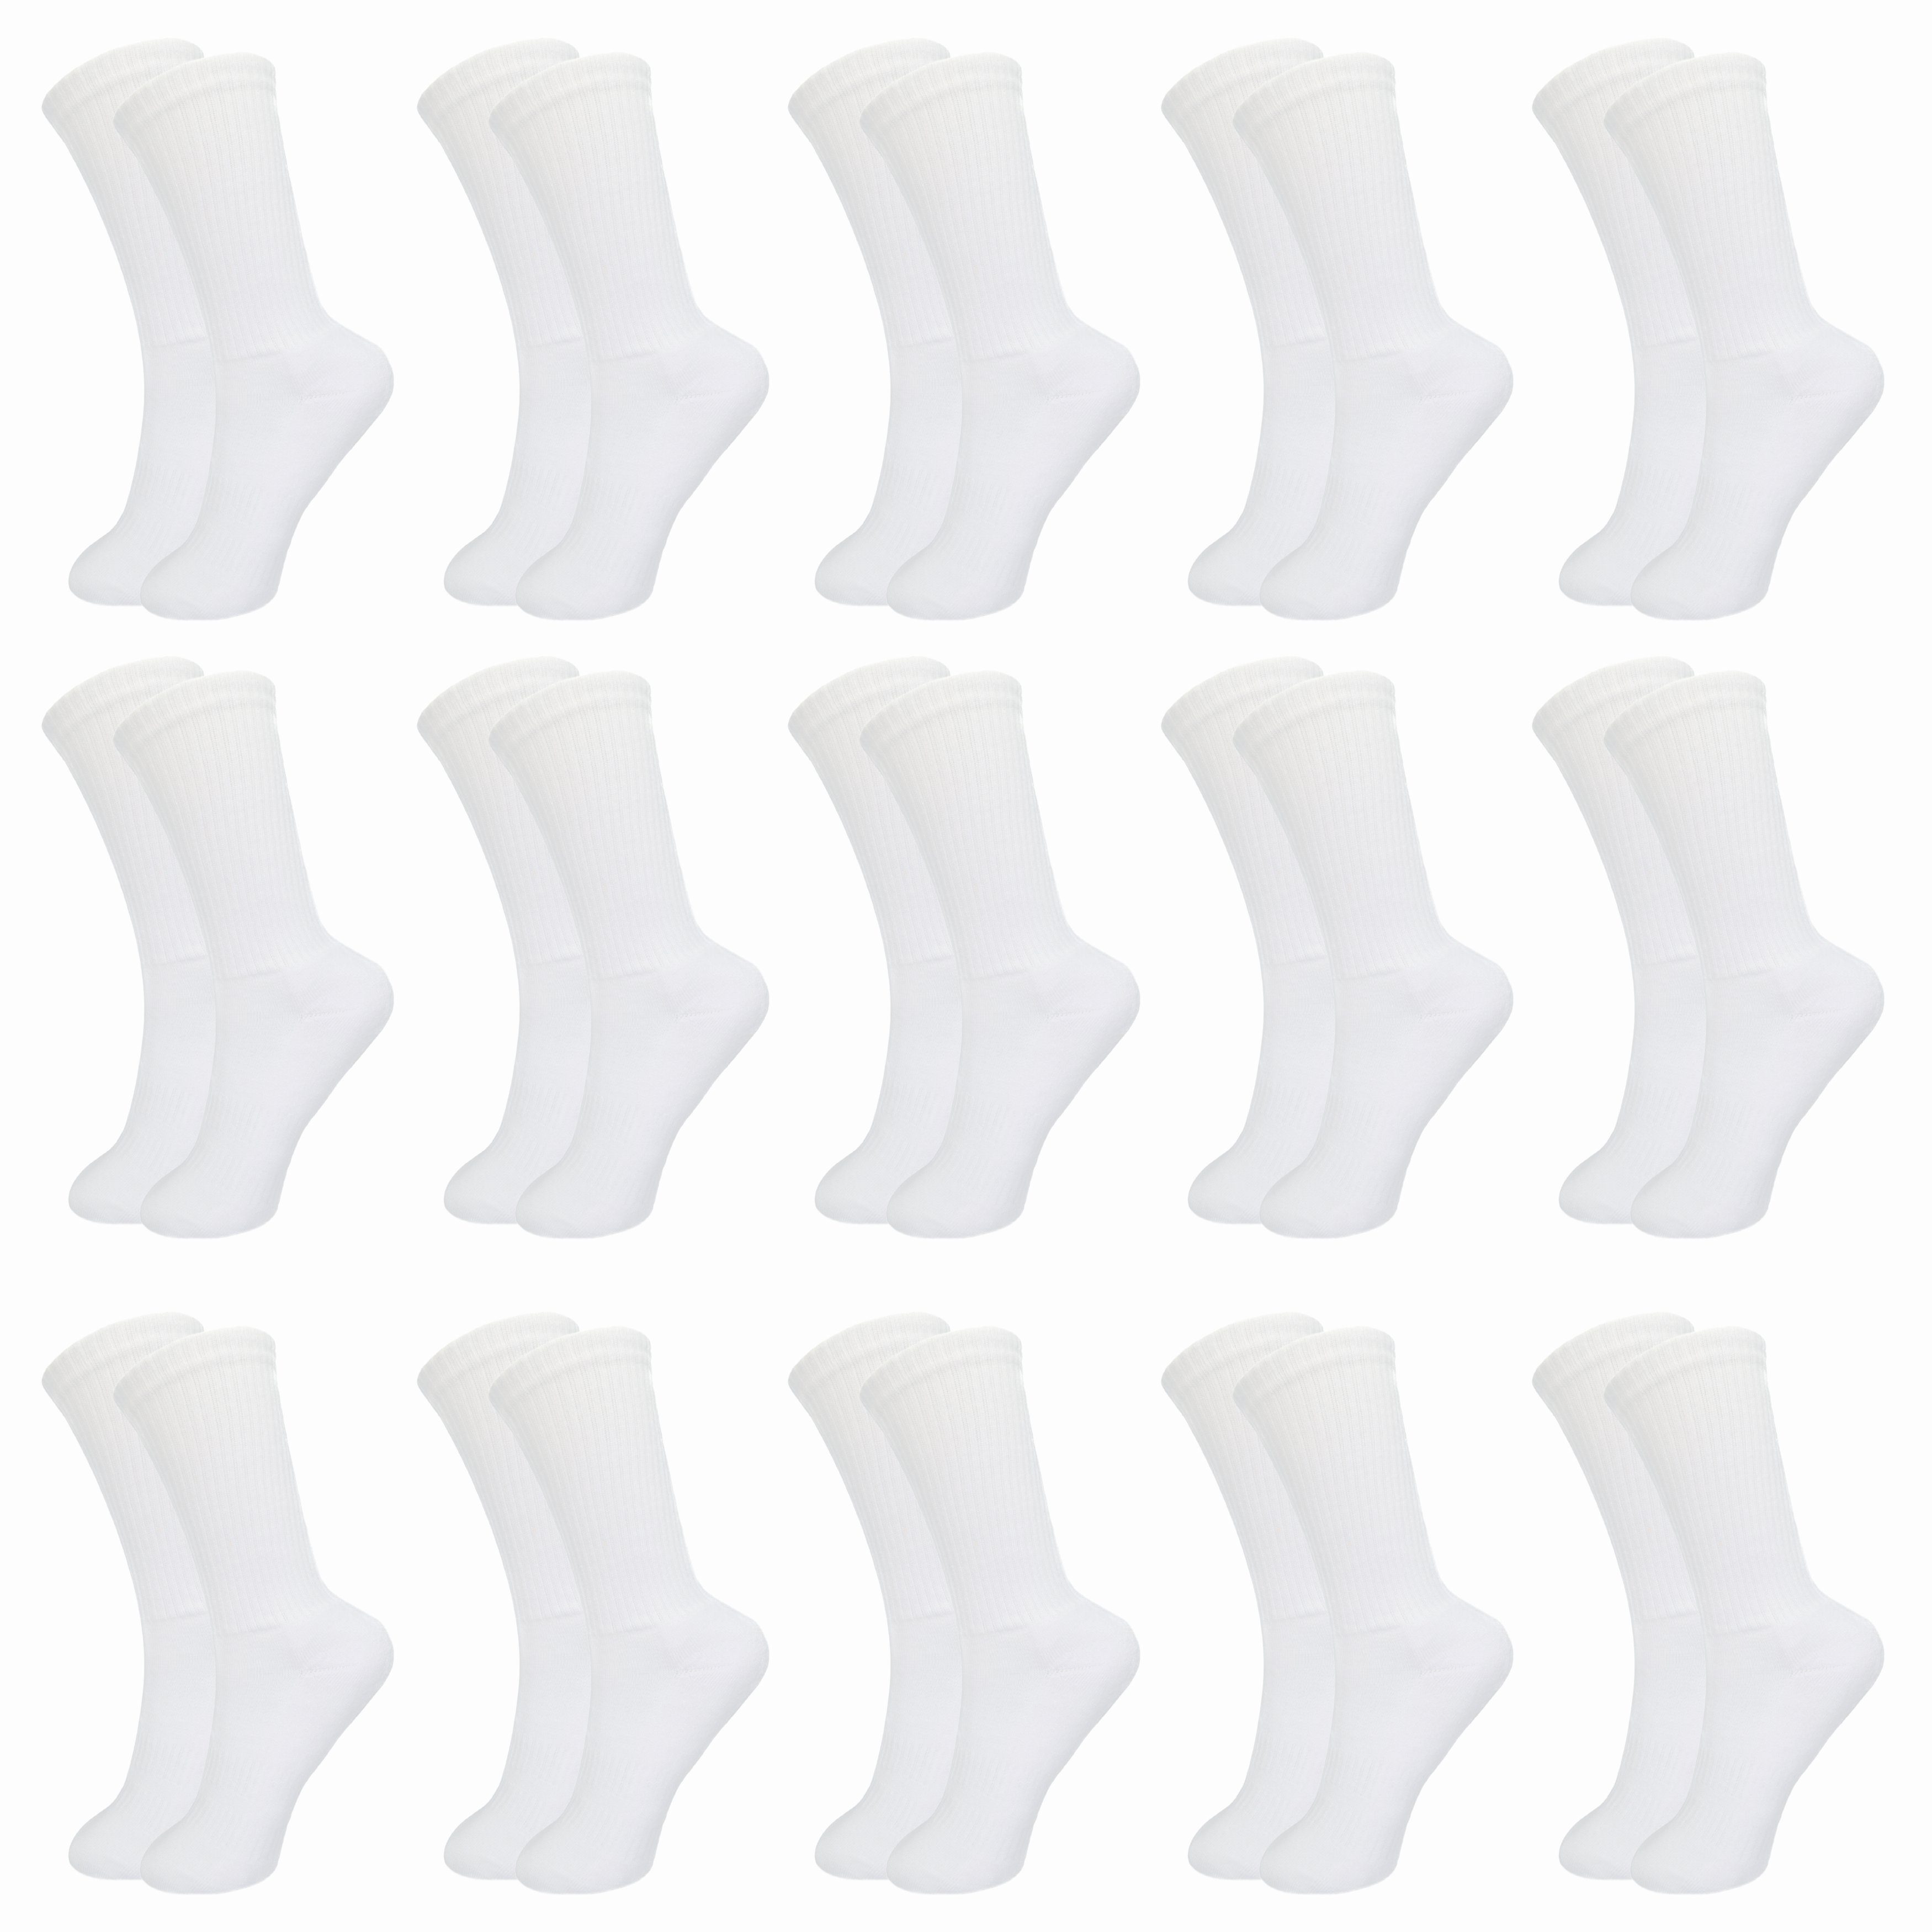 SO.I Tennissocken Sport Socken Für Damen & Herren Lange Freizeit-Socken aus Baumwolle (ohne drückende Naht, 5-15er Pack) Atmungsaktive Funktion 15x Weiß-15x Weiß